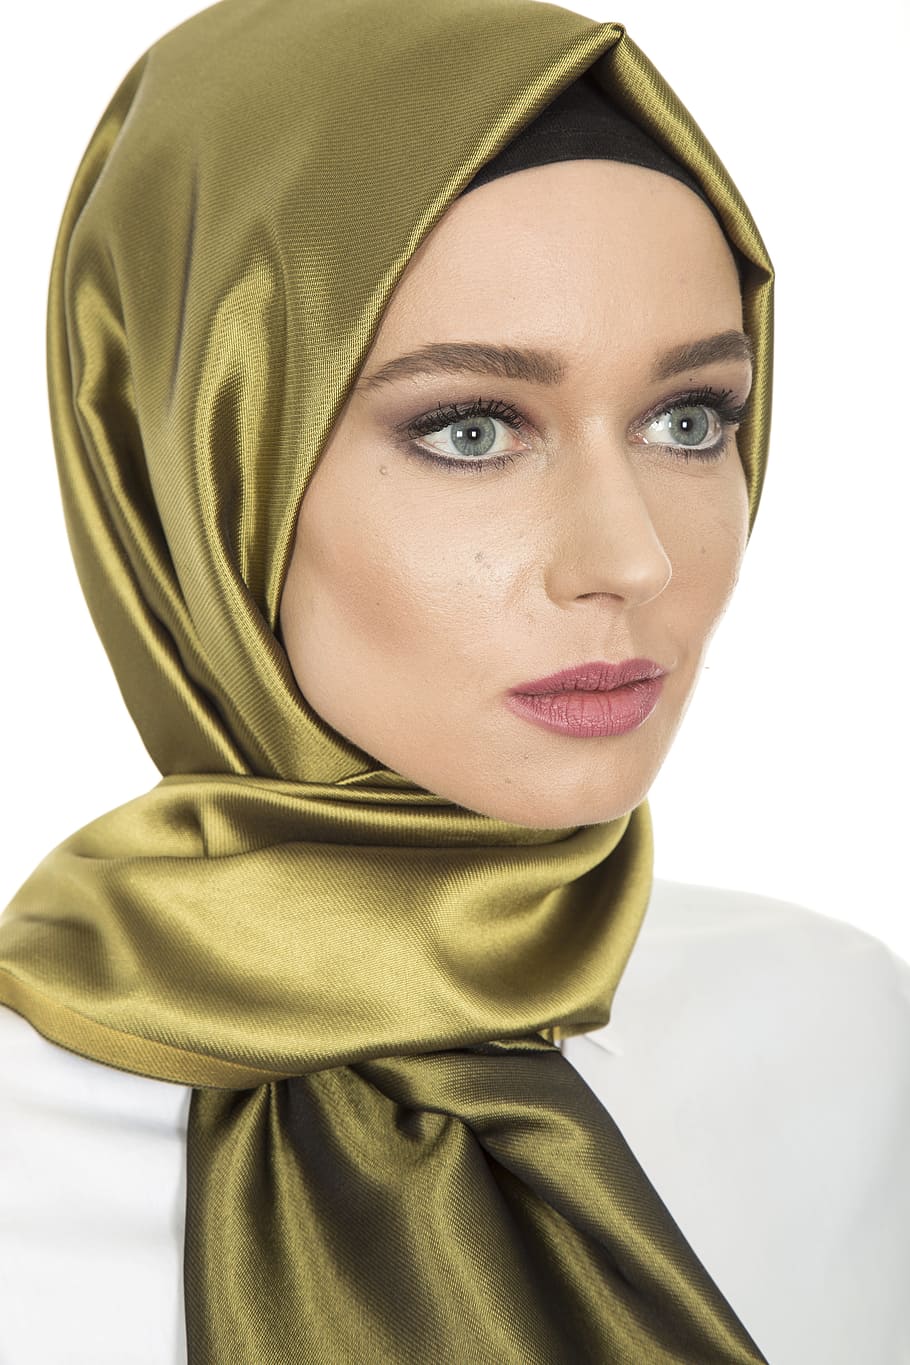 mujer con pañuelo en la cabeza, mujer, moda, islam, ropa, pañuelo en la cabeza, hijab, la mujer joven, sesión de moda, modelo joven